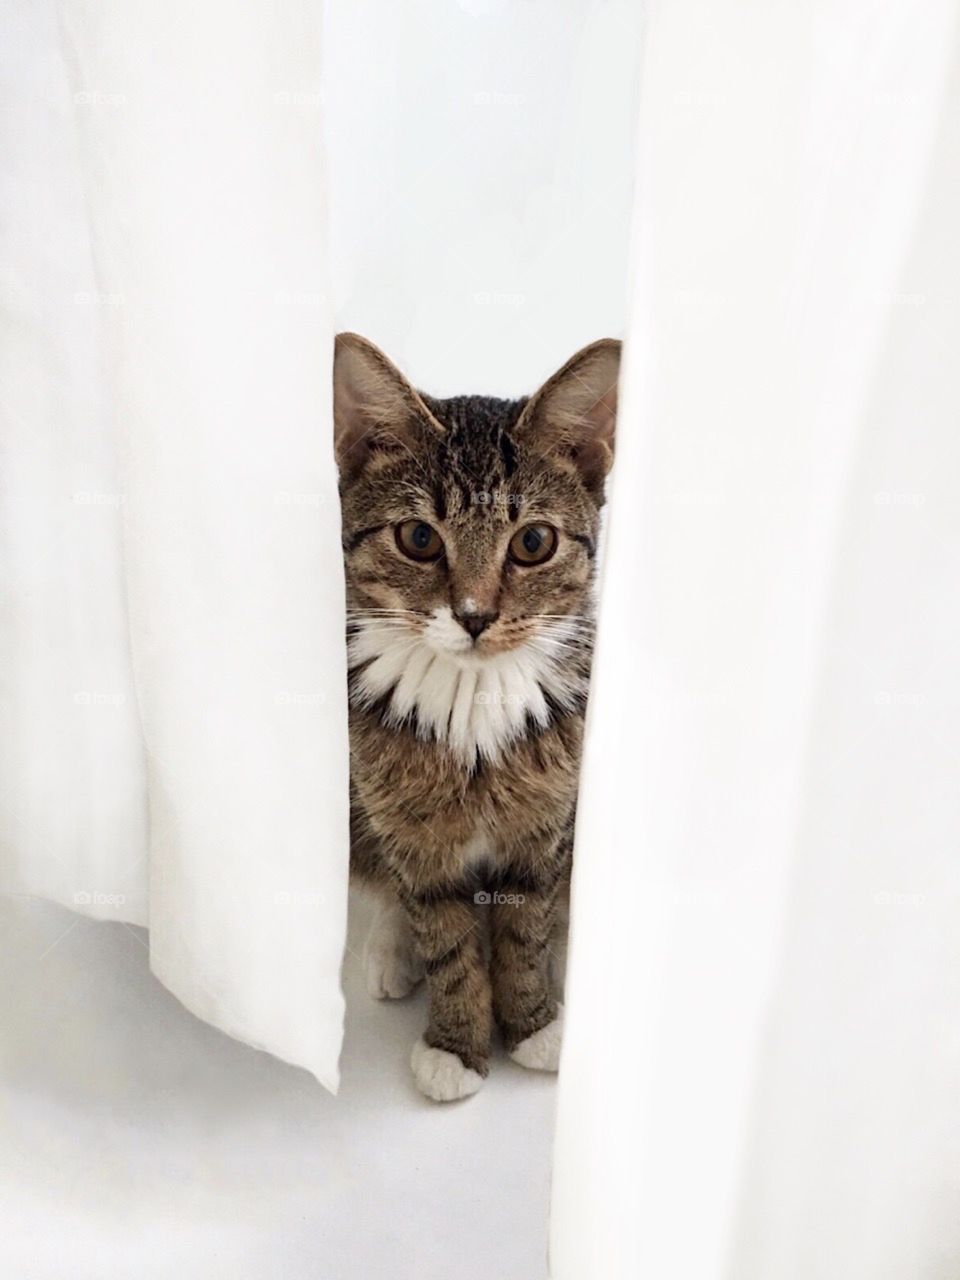 Tabby cat peeking through white shower curtain.